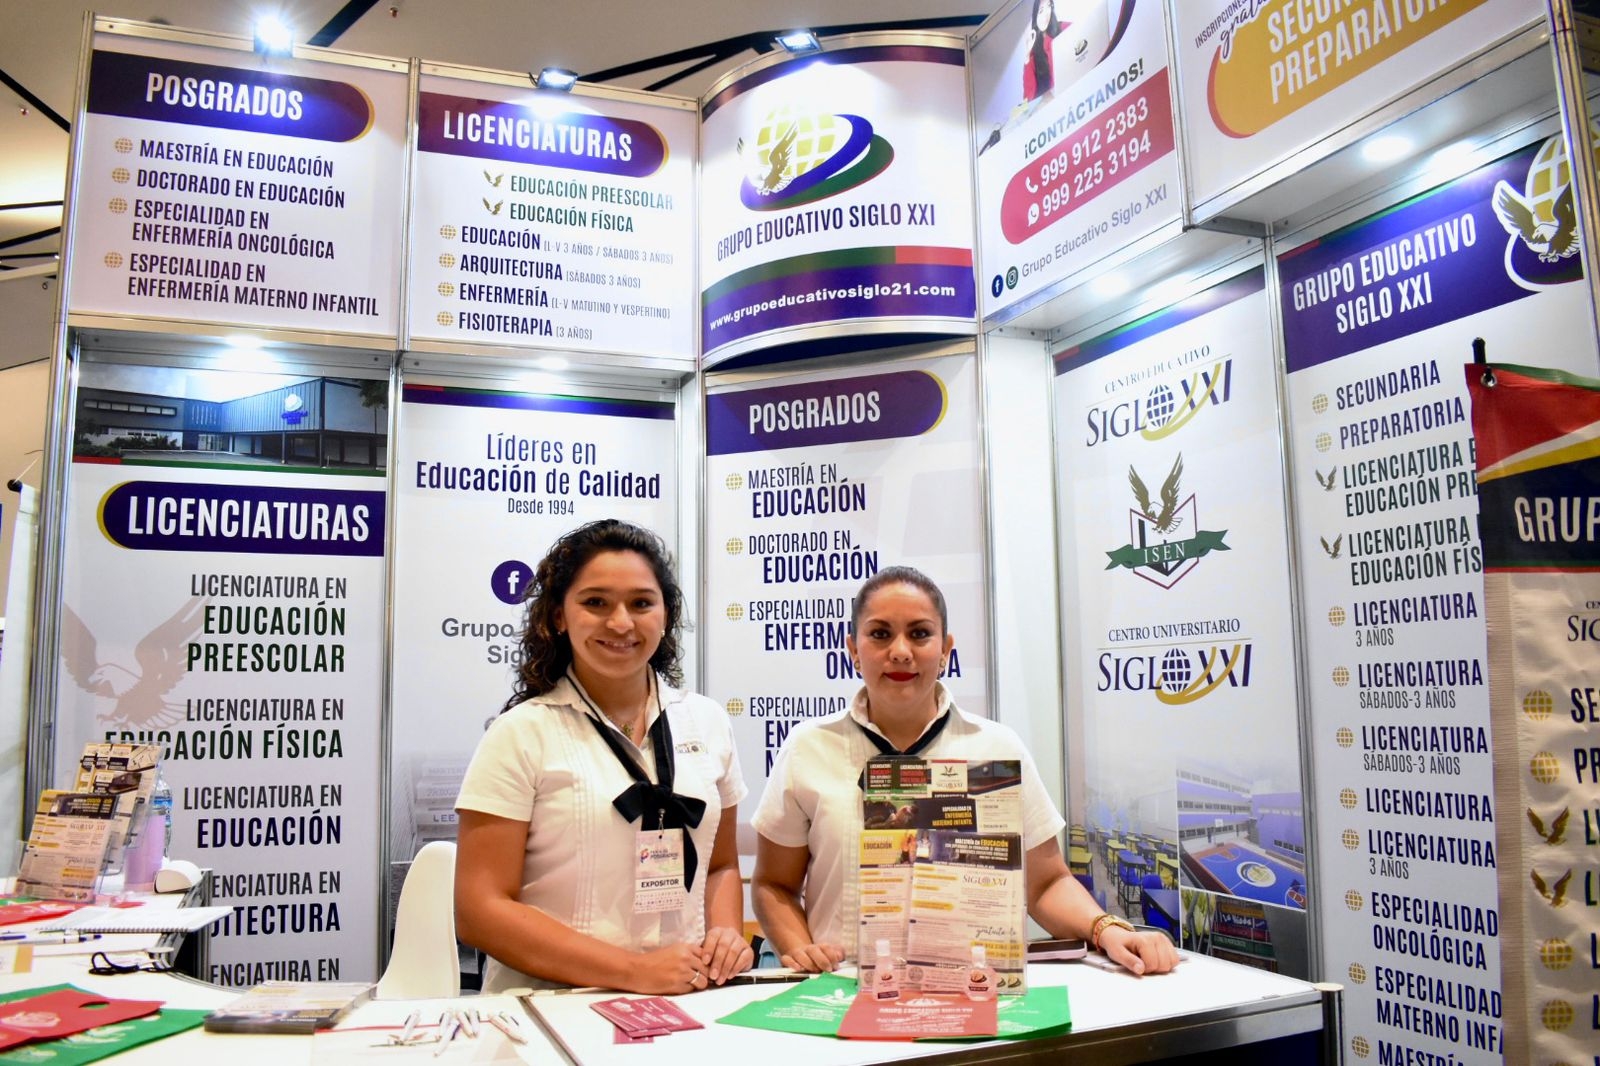 Serán 55 escuelas de Yucatán que ofertarán programas educativos en la Feria de Posgrados en Mérida